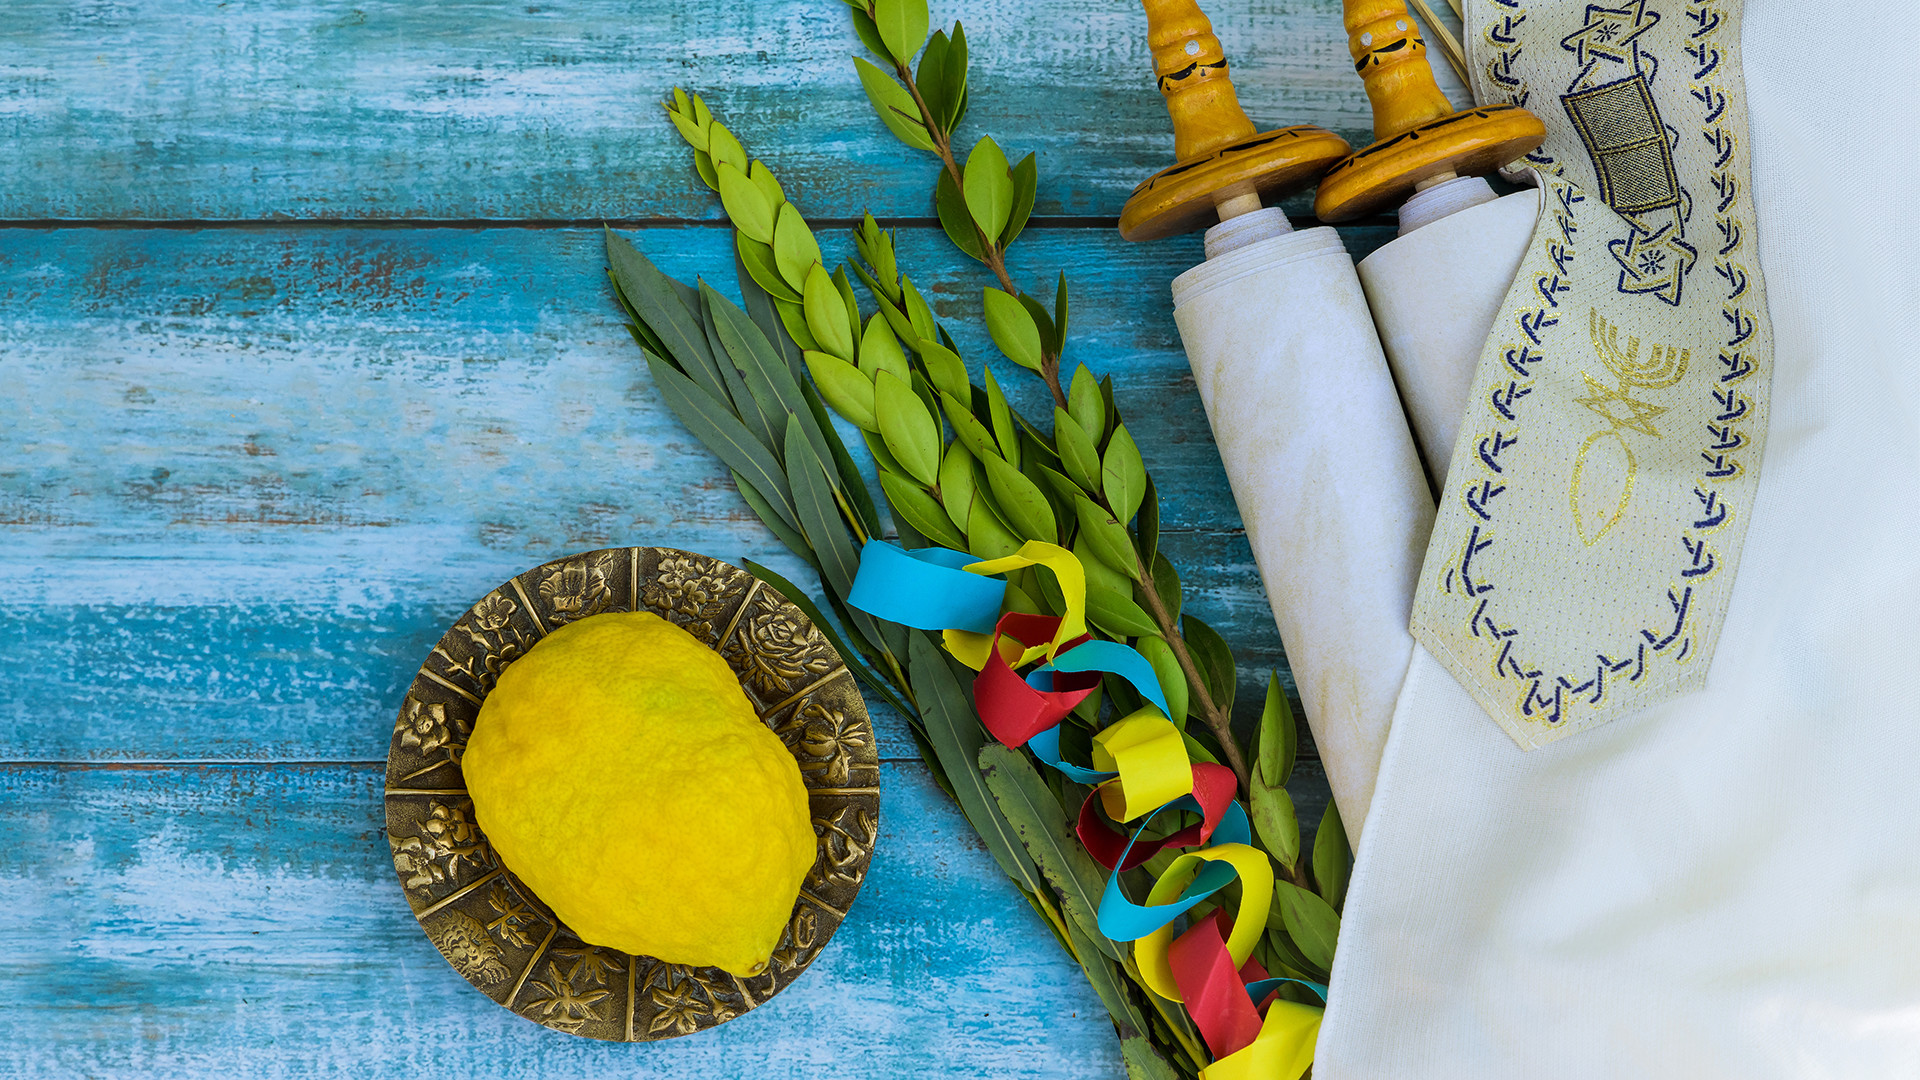 Jüdischen Feiertagssymbole, die für das Fest Sukkot verwendet werden: die Frucht Etrog, der Feststrauß Lulav und weitere